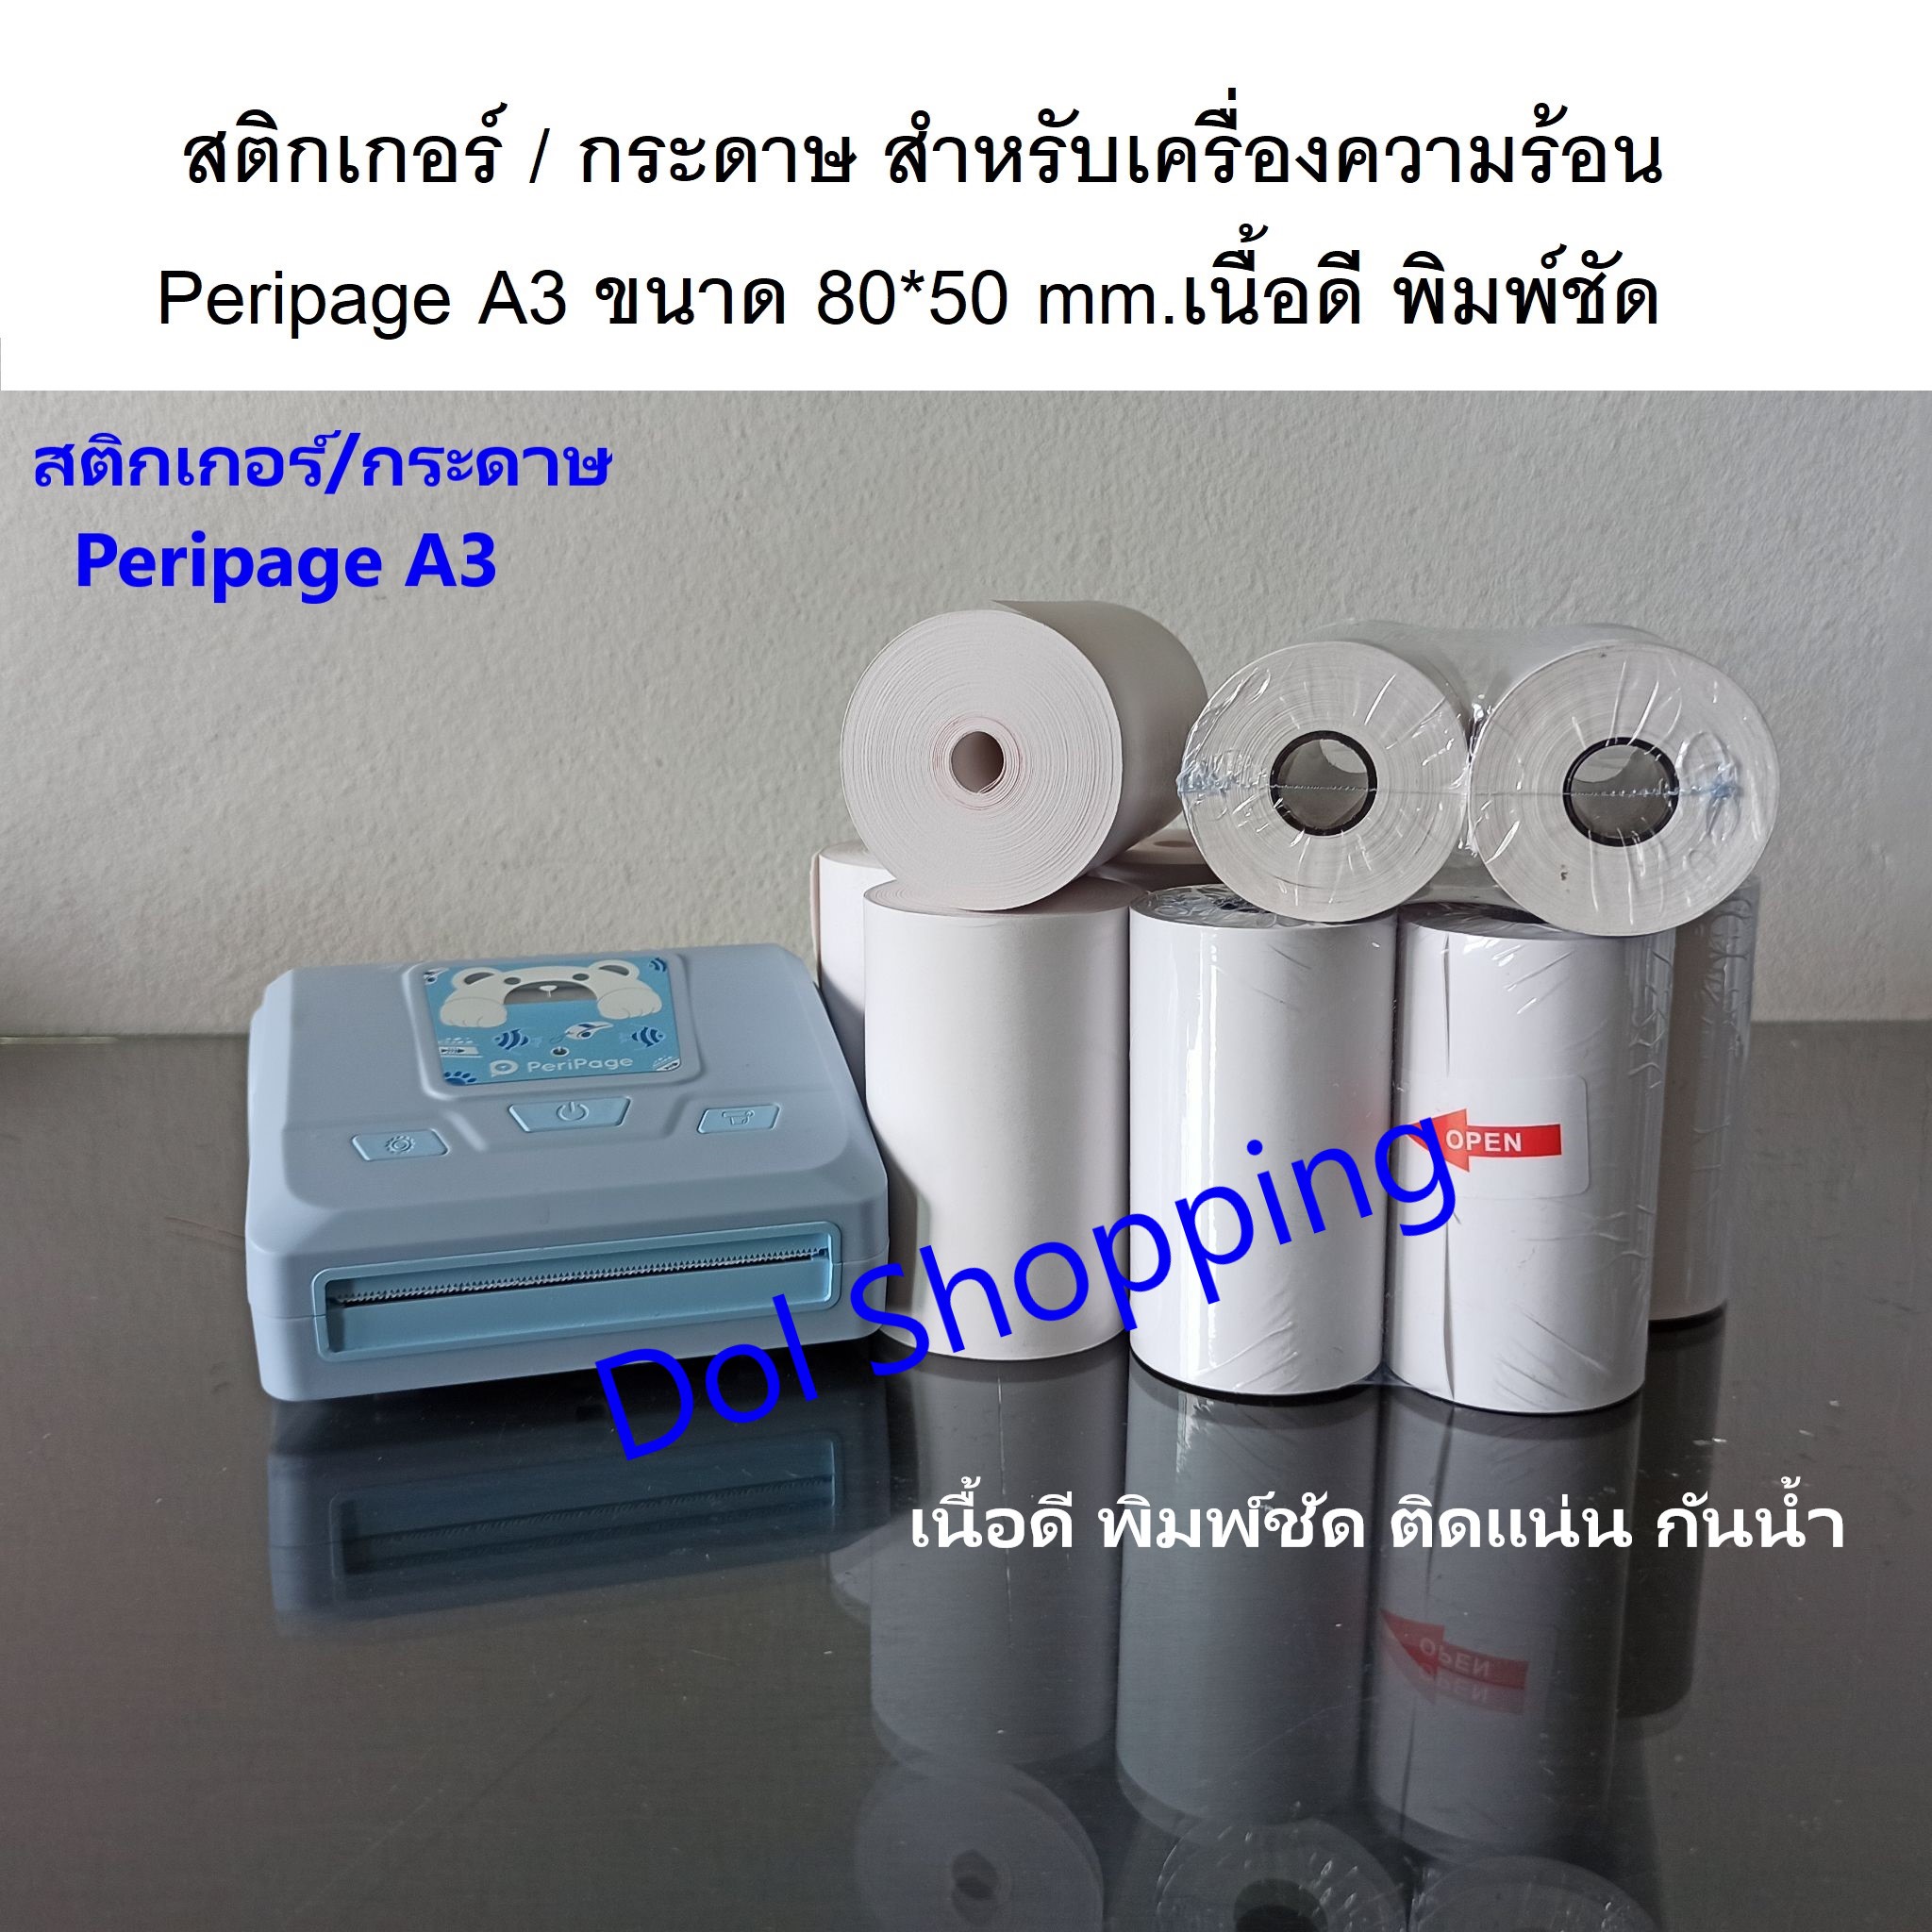 สติกเกอร์เว้นขอบ/กระดาษ สำหรับเครื่อง Peripage A3 1 ม้วน เนื้อดี พิมพ์ชัด